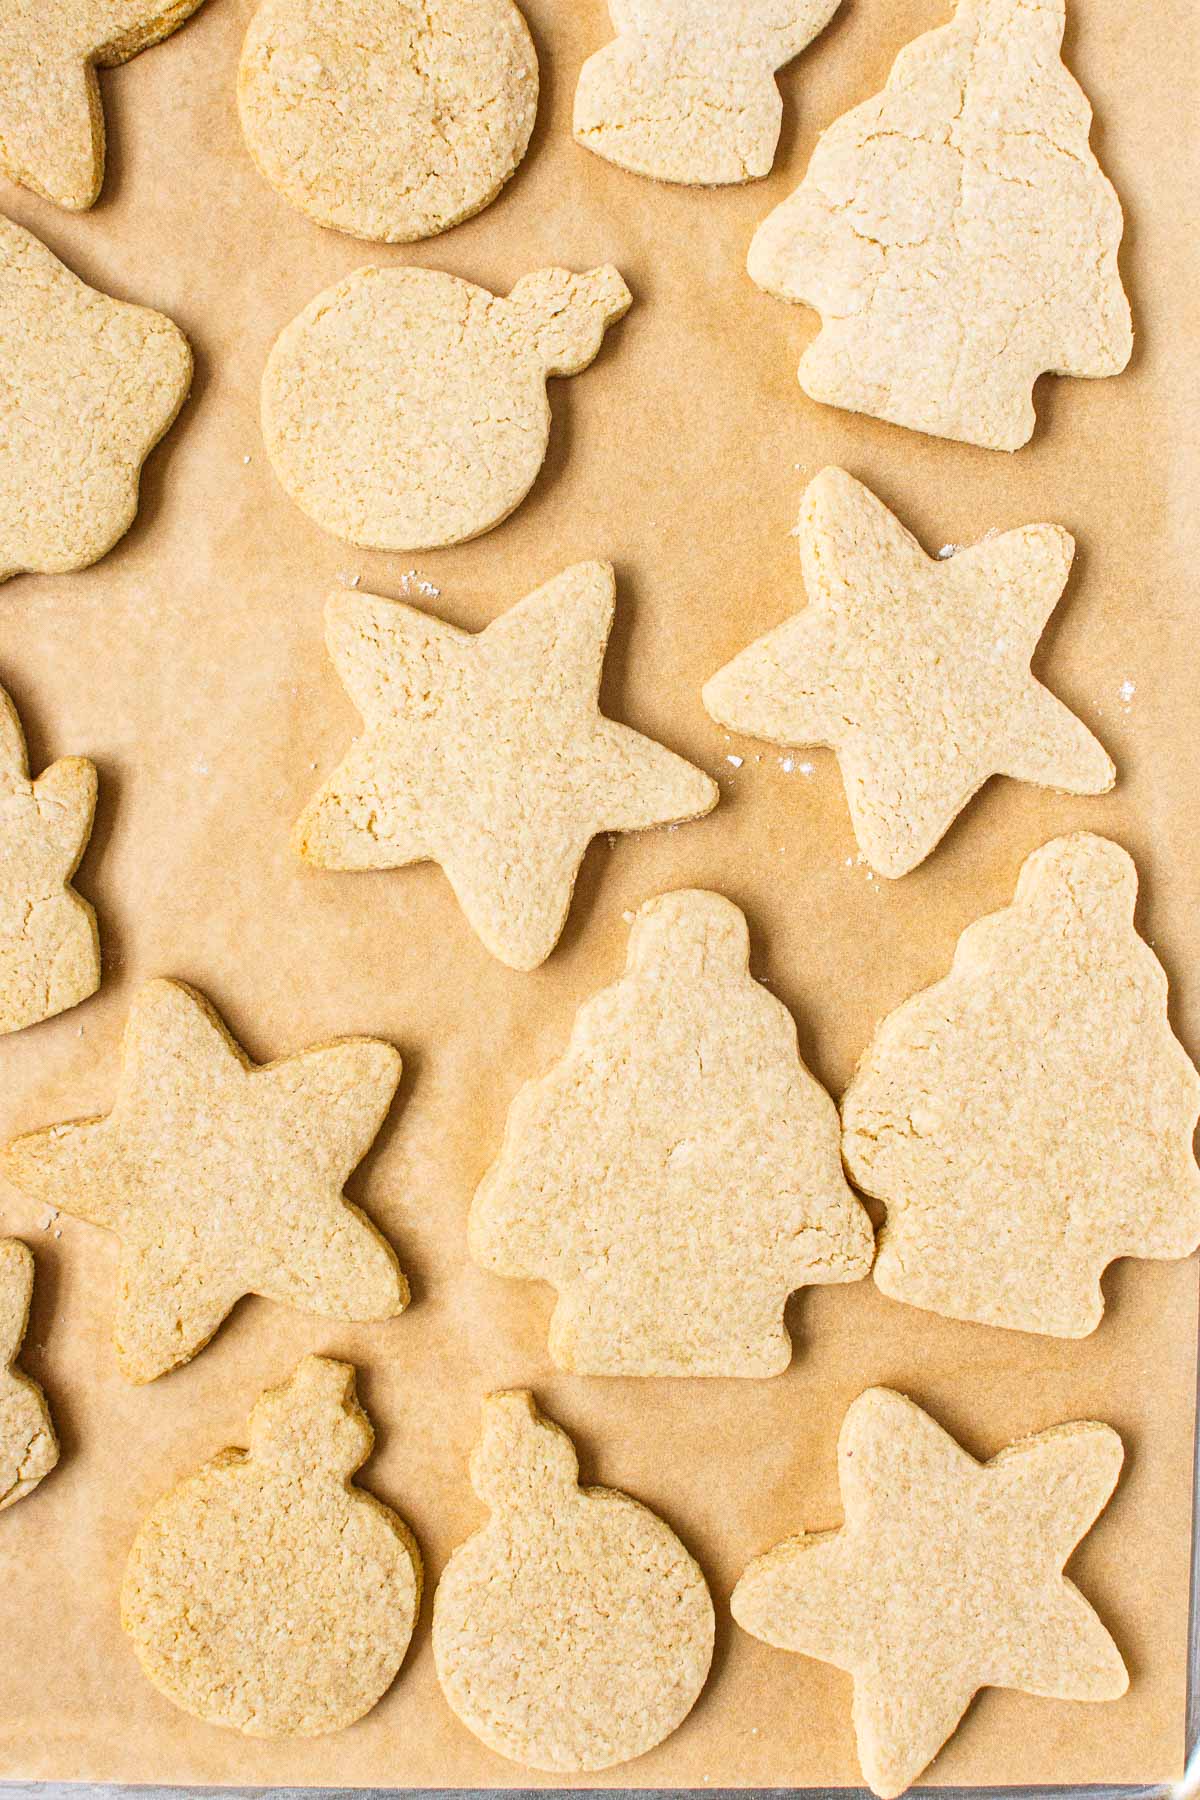 Plain sugar cookies cut into shapes on parchment paper.